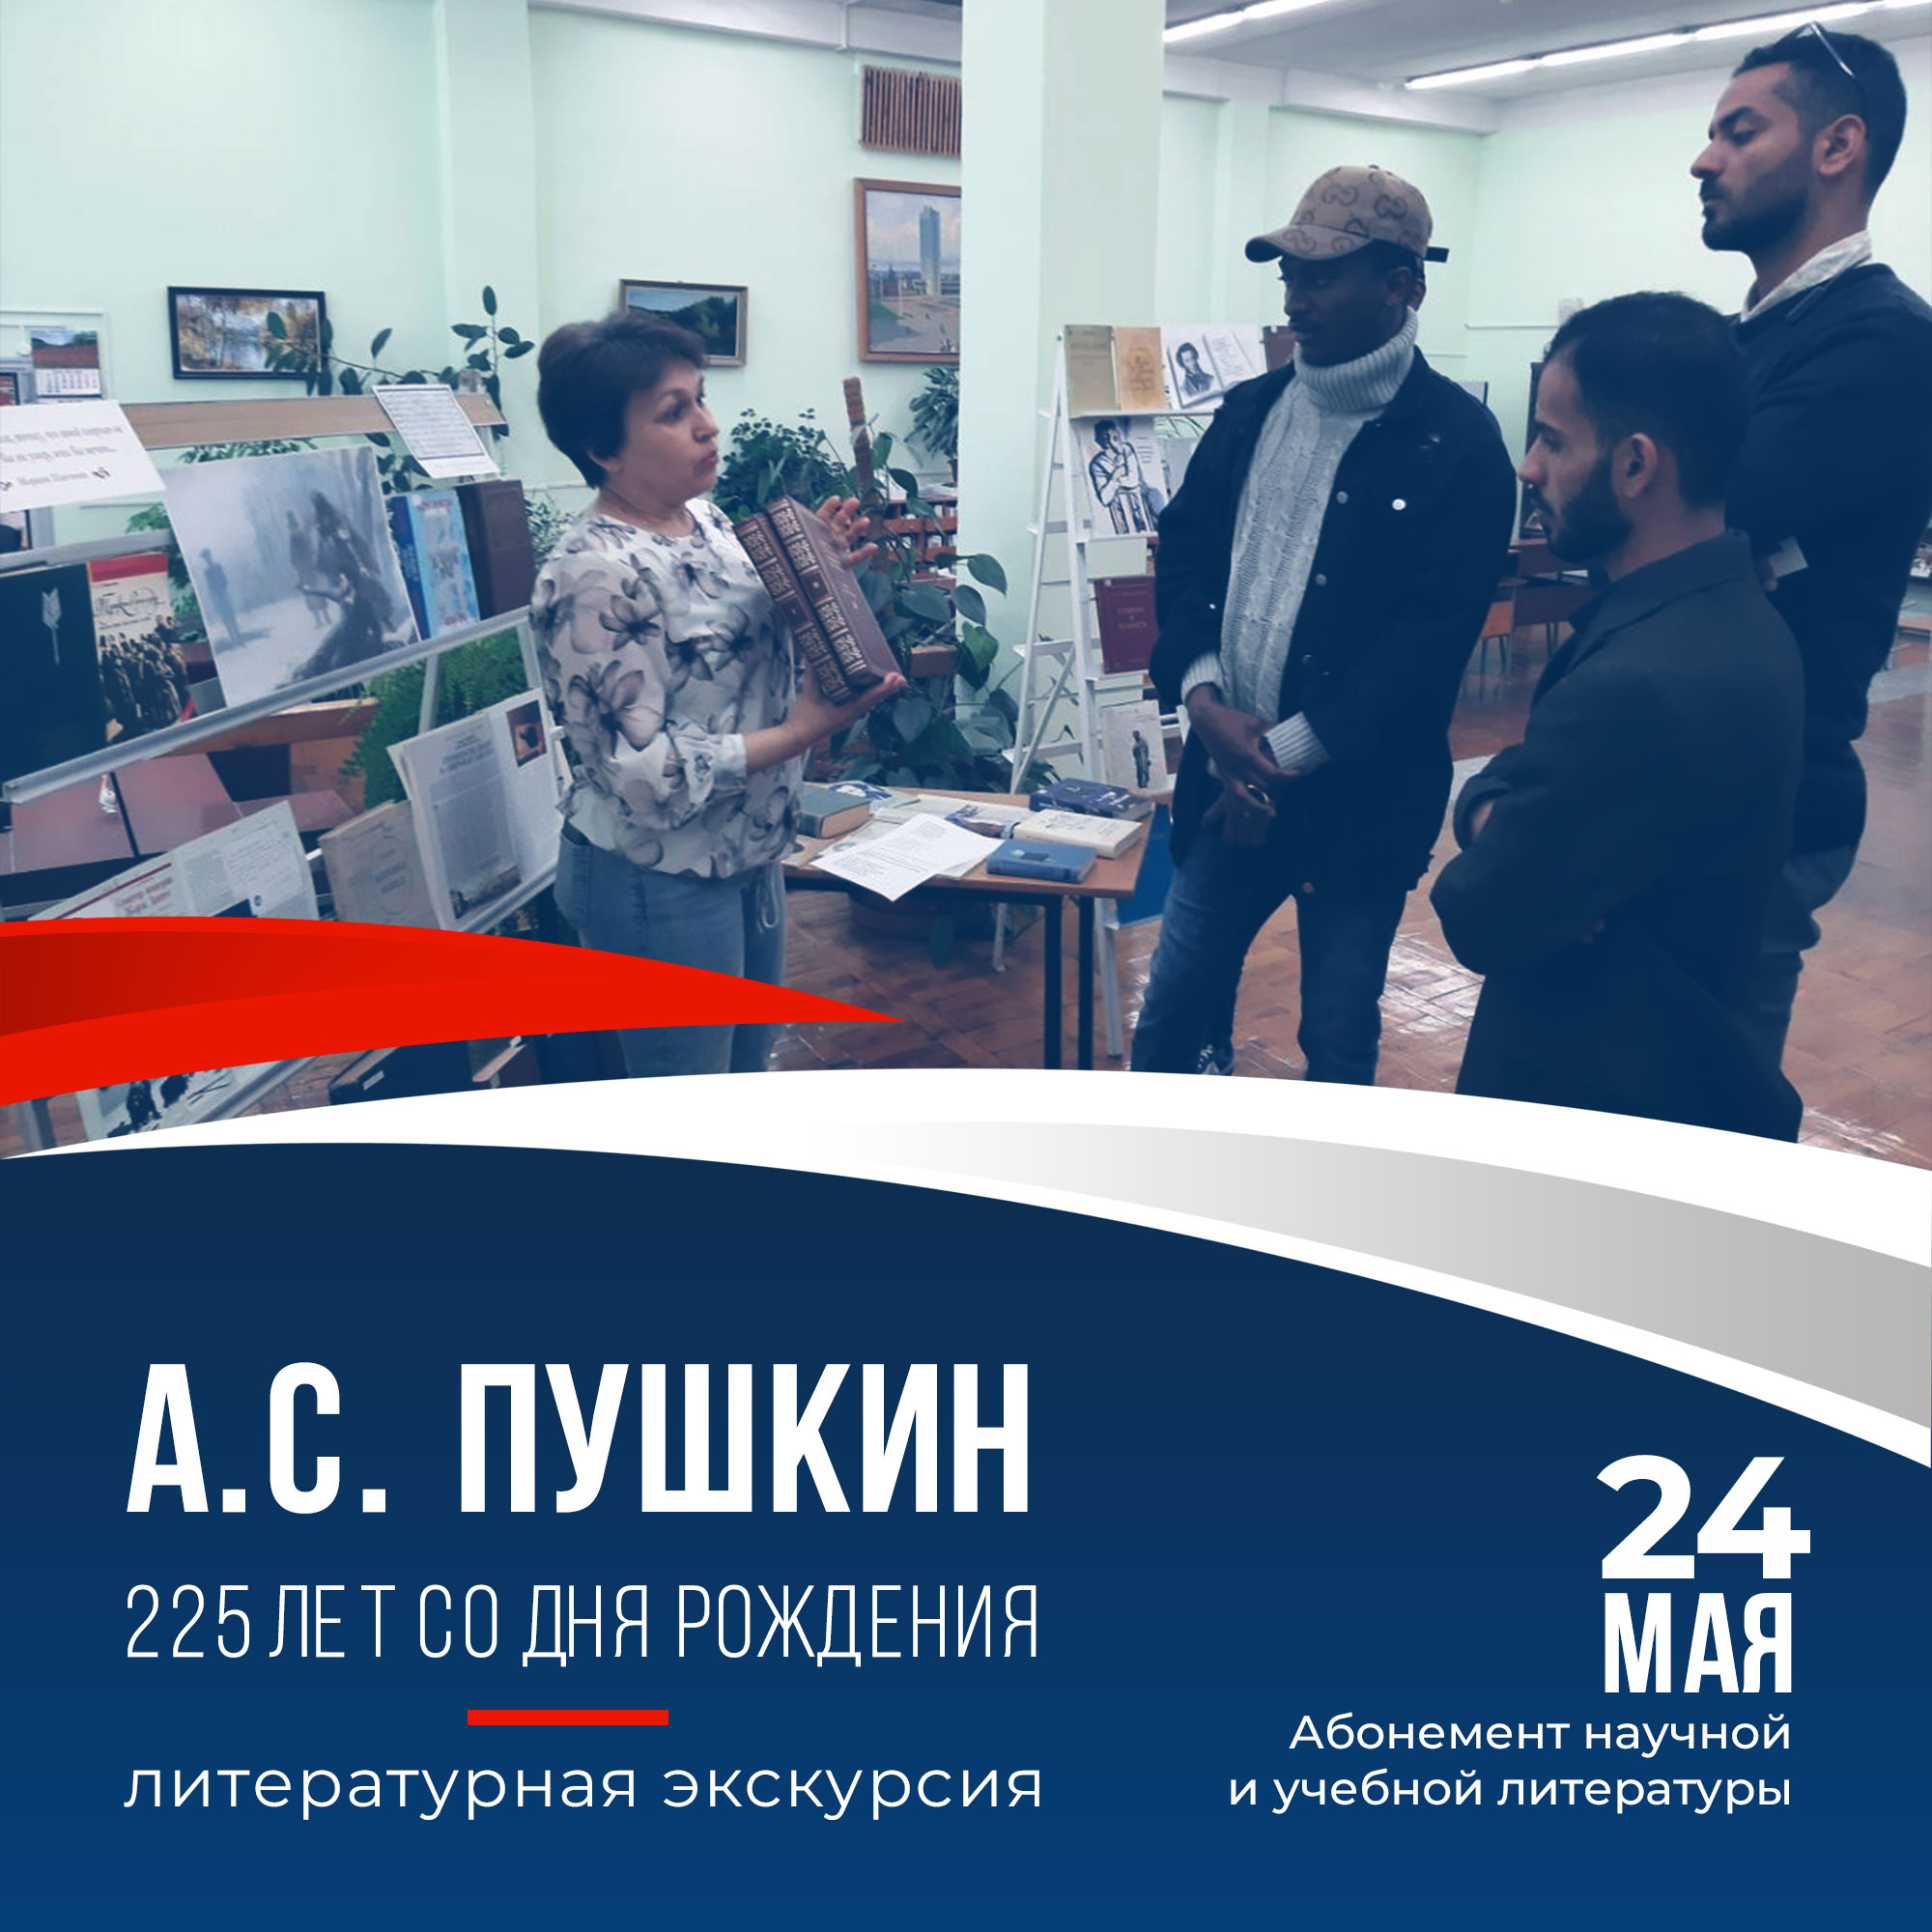 24 мая сотрудники абонемента провели для иностранных студентов литературную экскурсию, посвященную юбилею А.С. Пушкина